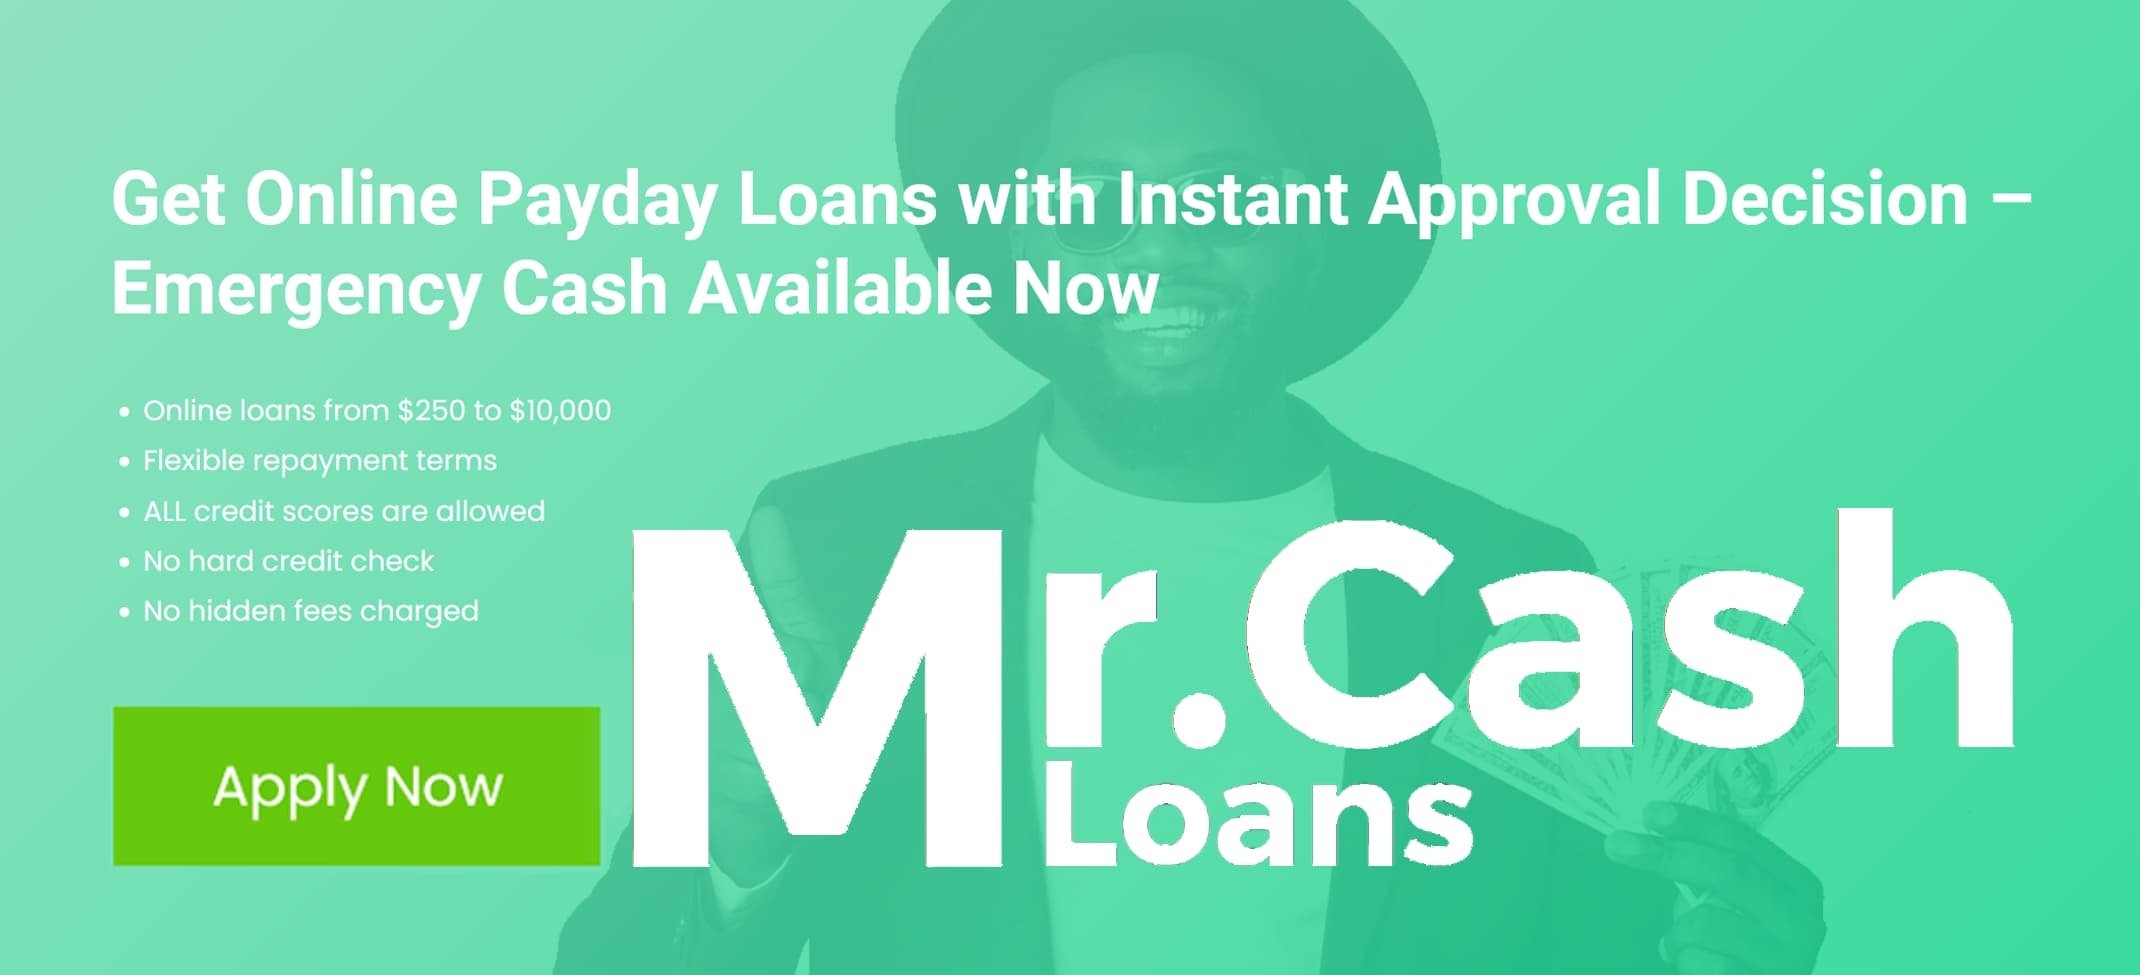 Mr. Cash Loans cover